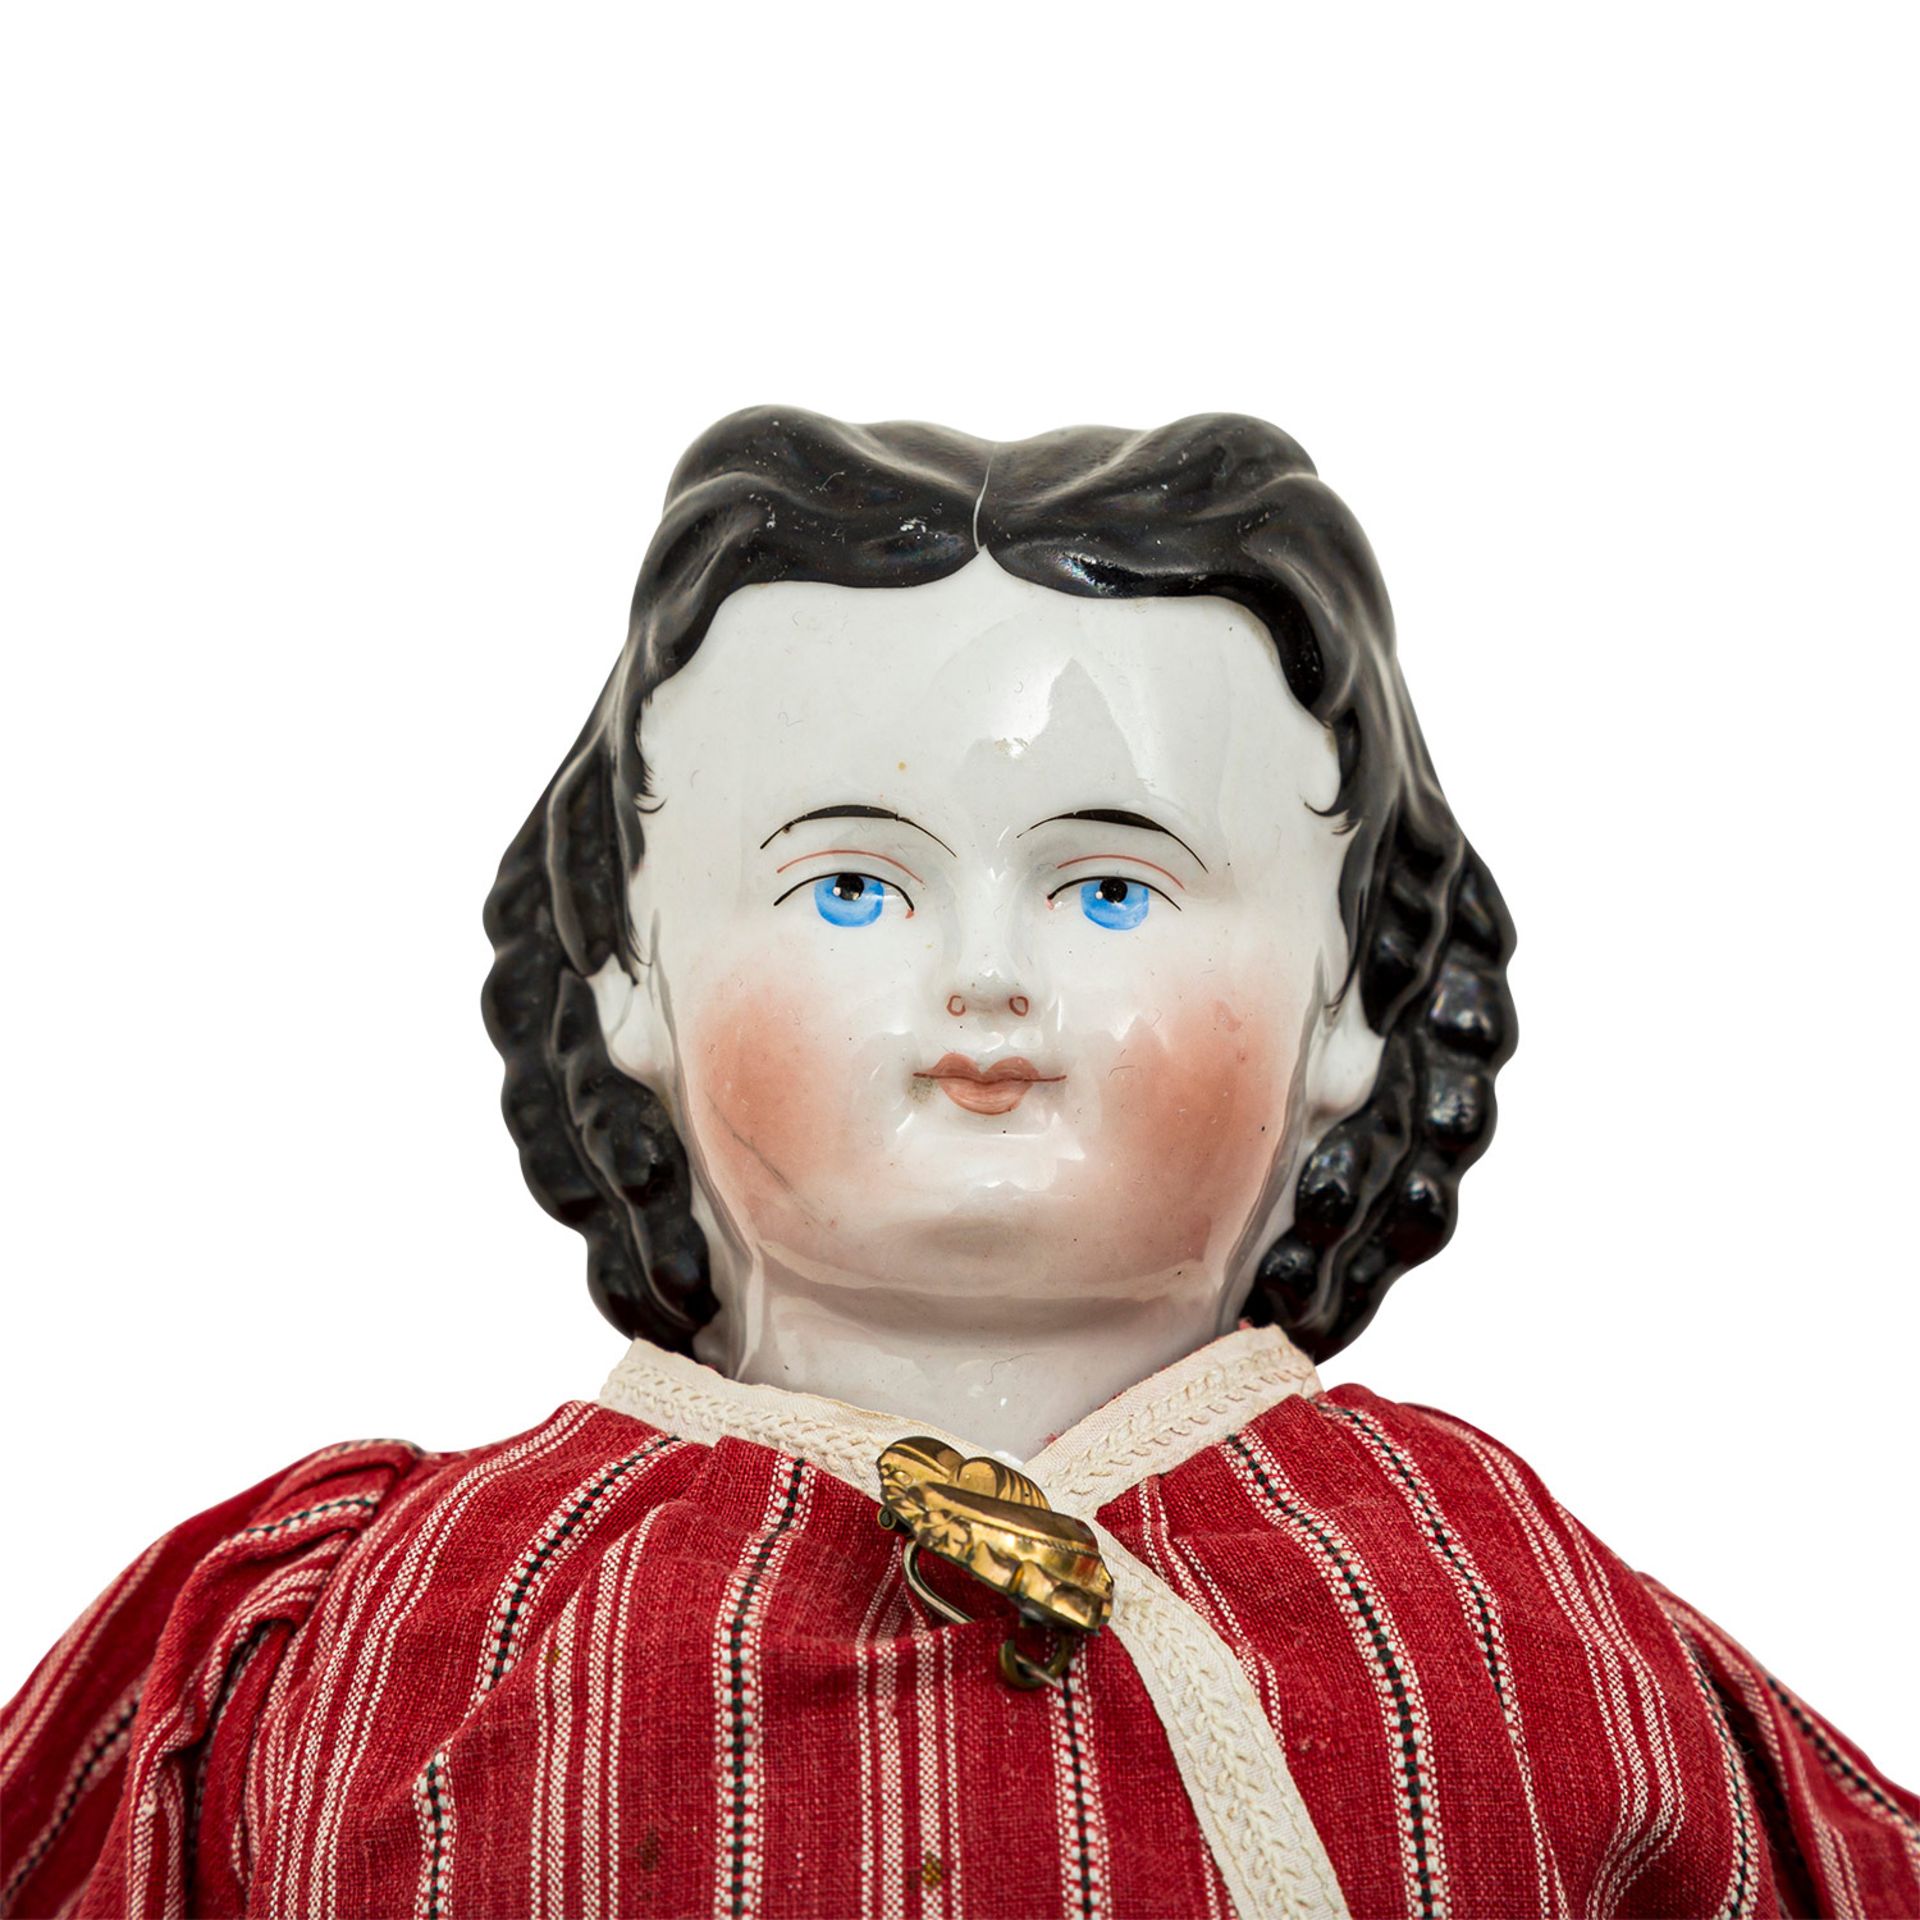 CHINA-HEAD Puppe, wohl 19. Jh.Brustblattkopf-Puppe aus glasiertem Porzellan, blaue, gemalte Augen, - Image 4 of 4